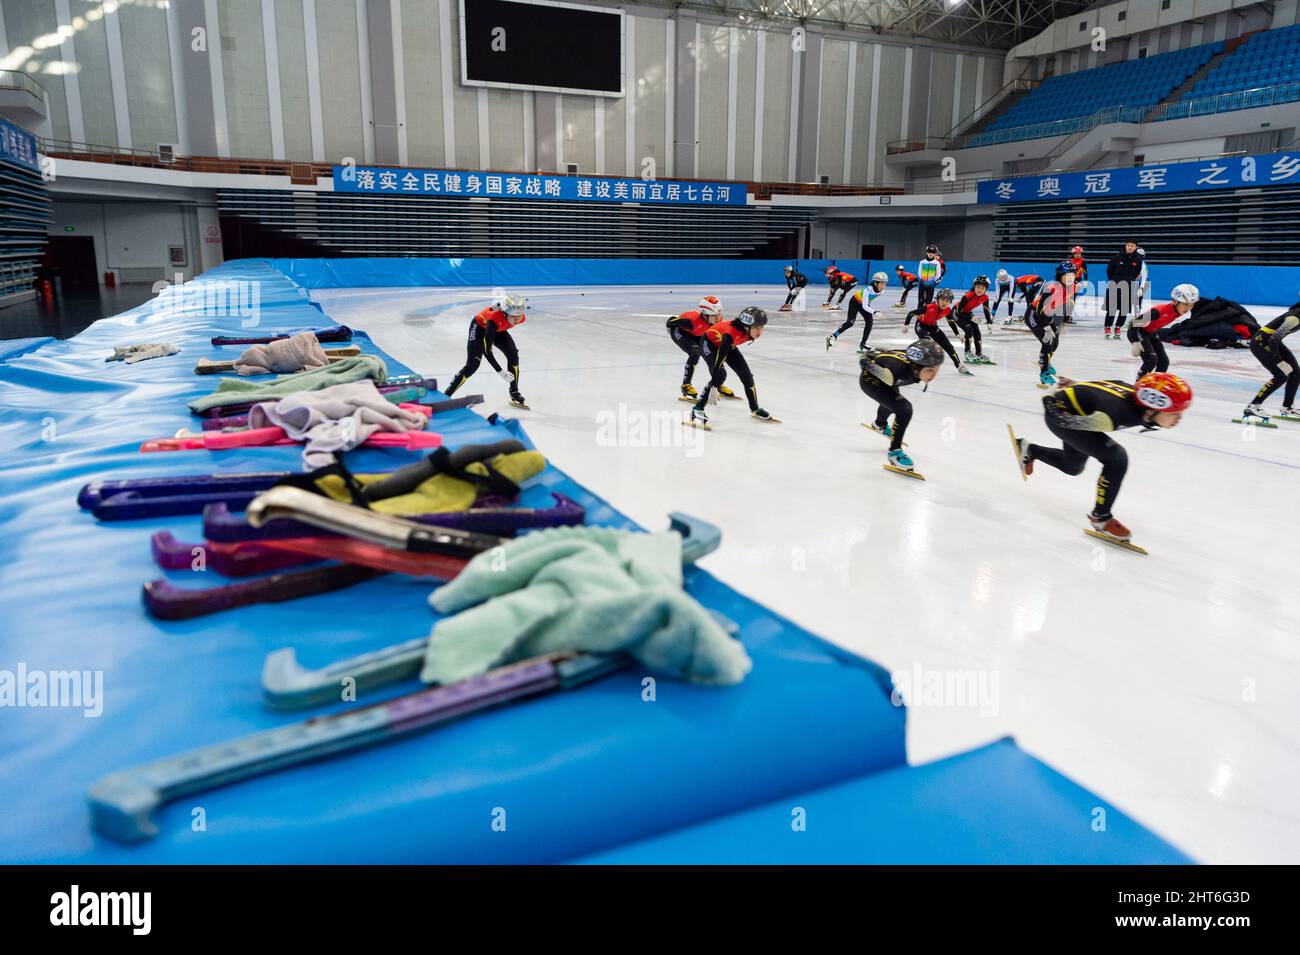 (220227) -- QITAIHE, 27 février 2022 (Xinhua) -- photo prise le 24 février 2022 montre des élèves de l'école municipale de sport amateur de Qitaihe qui participent à une séance de formation sur le patinage de vitesse sur piste courte au Qitaihe Sports Centre de Qitaihe, dans la province de Heilongjiang, dans le nord-est de la Chine. À ce jour, 7 des 22 médailles d'or olympiques d'hiver de Chine ont été revendiquées par des athlètes formés à Qitaihe City. La ville a intensié ses efforts pour former les talents des sports d'hiver au cours des dernières années en construisant des écoles qui offrent une formation de patinage de vitesse sur piste courte, en établissant une base d'entraînement pour l'équipe sportive provinciale, a Banque D'Images